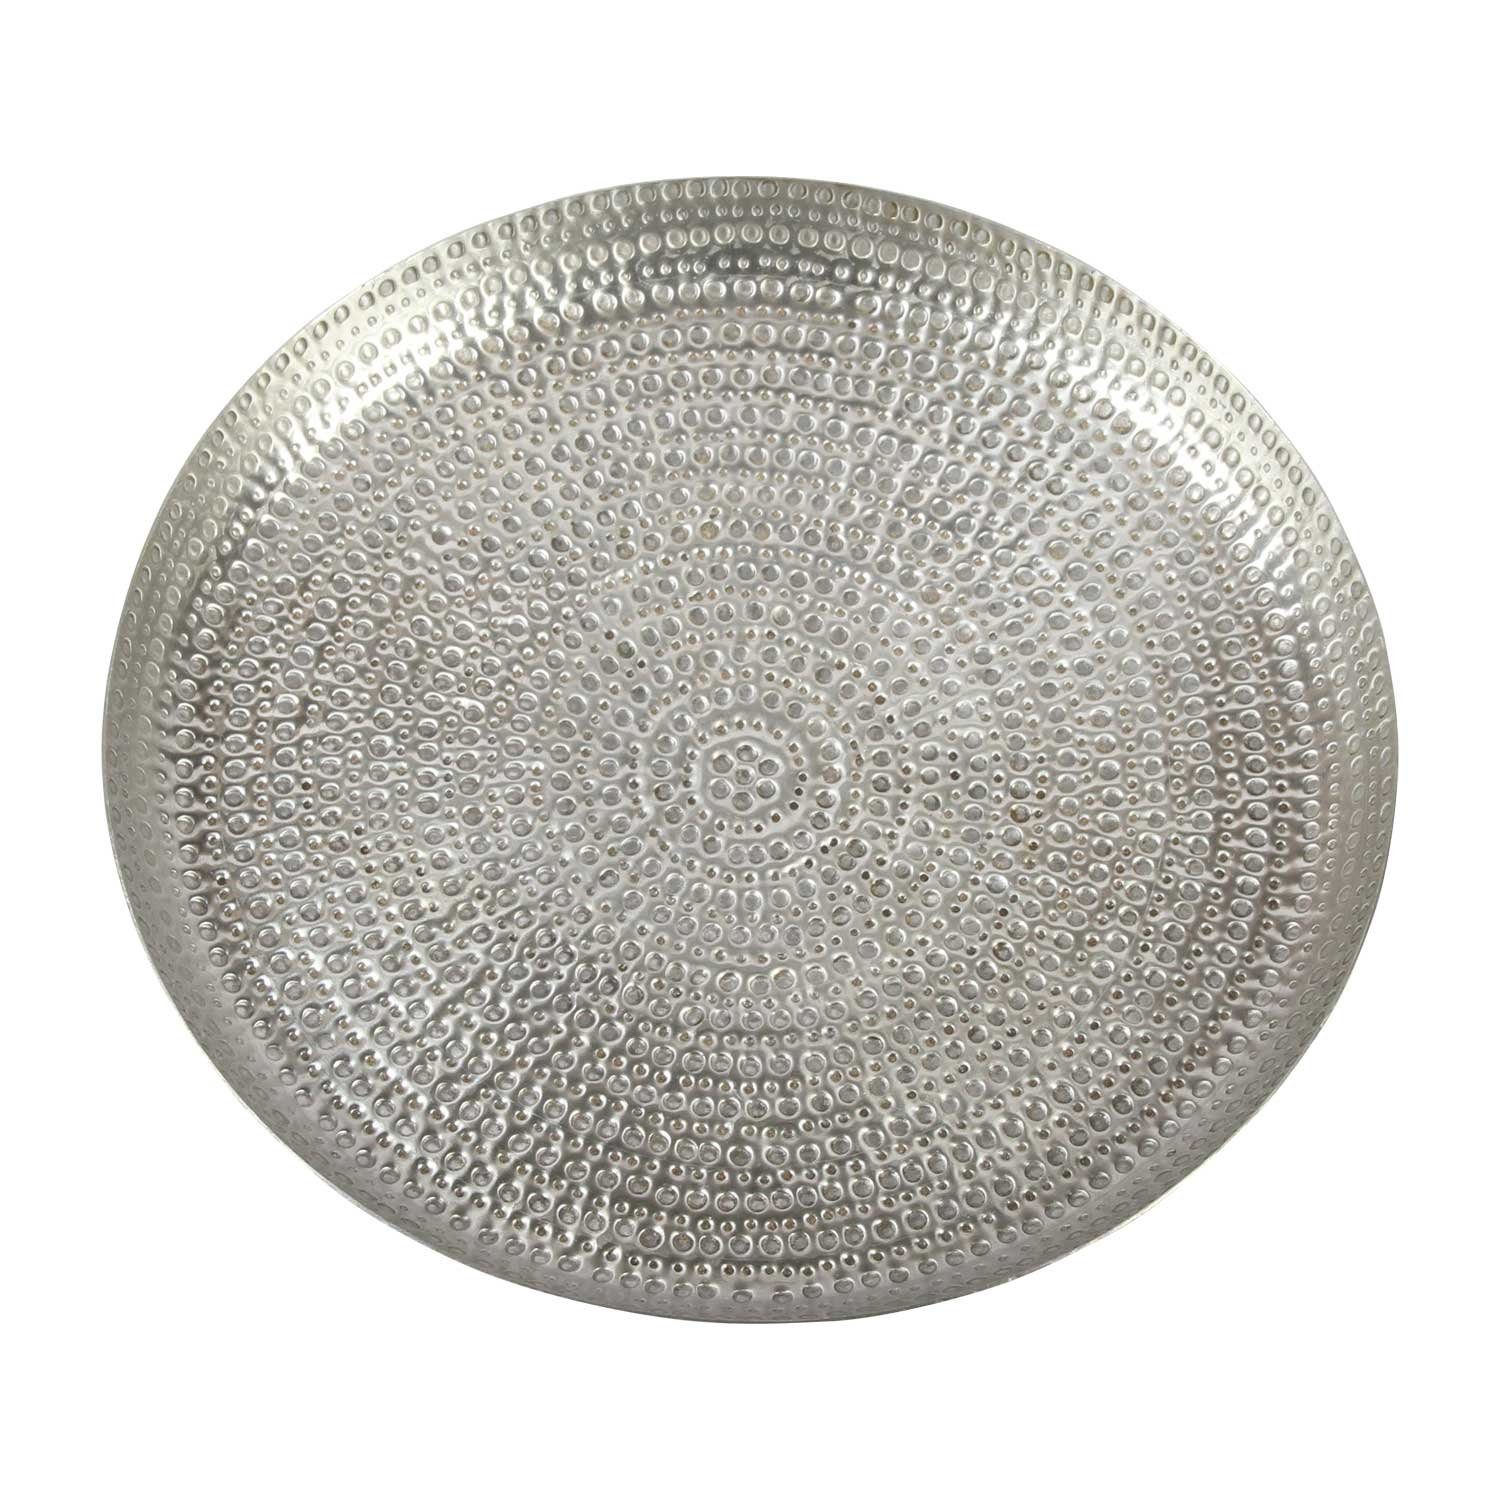 Casa Moro Tablett Orientalisches Teetablett Zana Ø 38 cm mit Hammerschlag-Optik, Aluminium, (Weihnachtsdeko, Boho Chic Dekotablett), rundes Serviertablett Silber